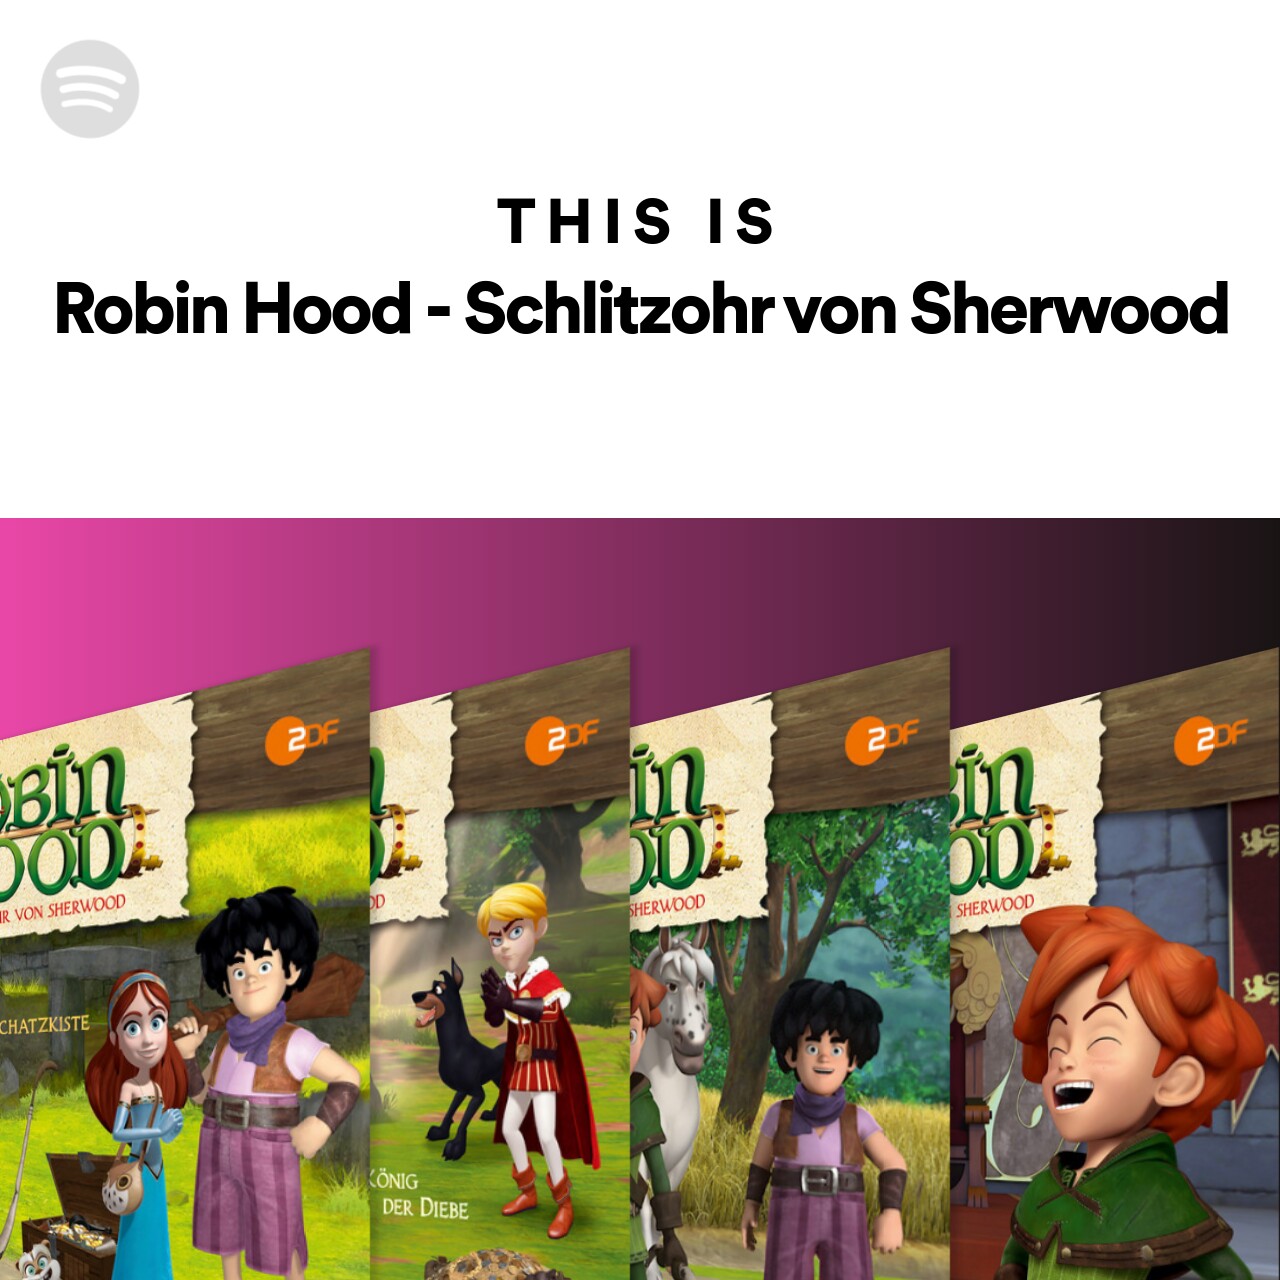 This Is Robin Hood - Schlitzohr von Sherwood